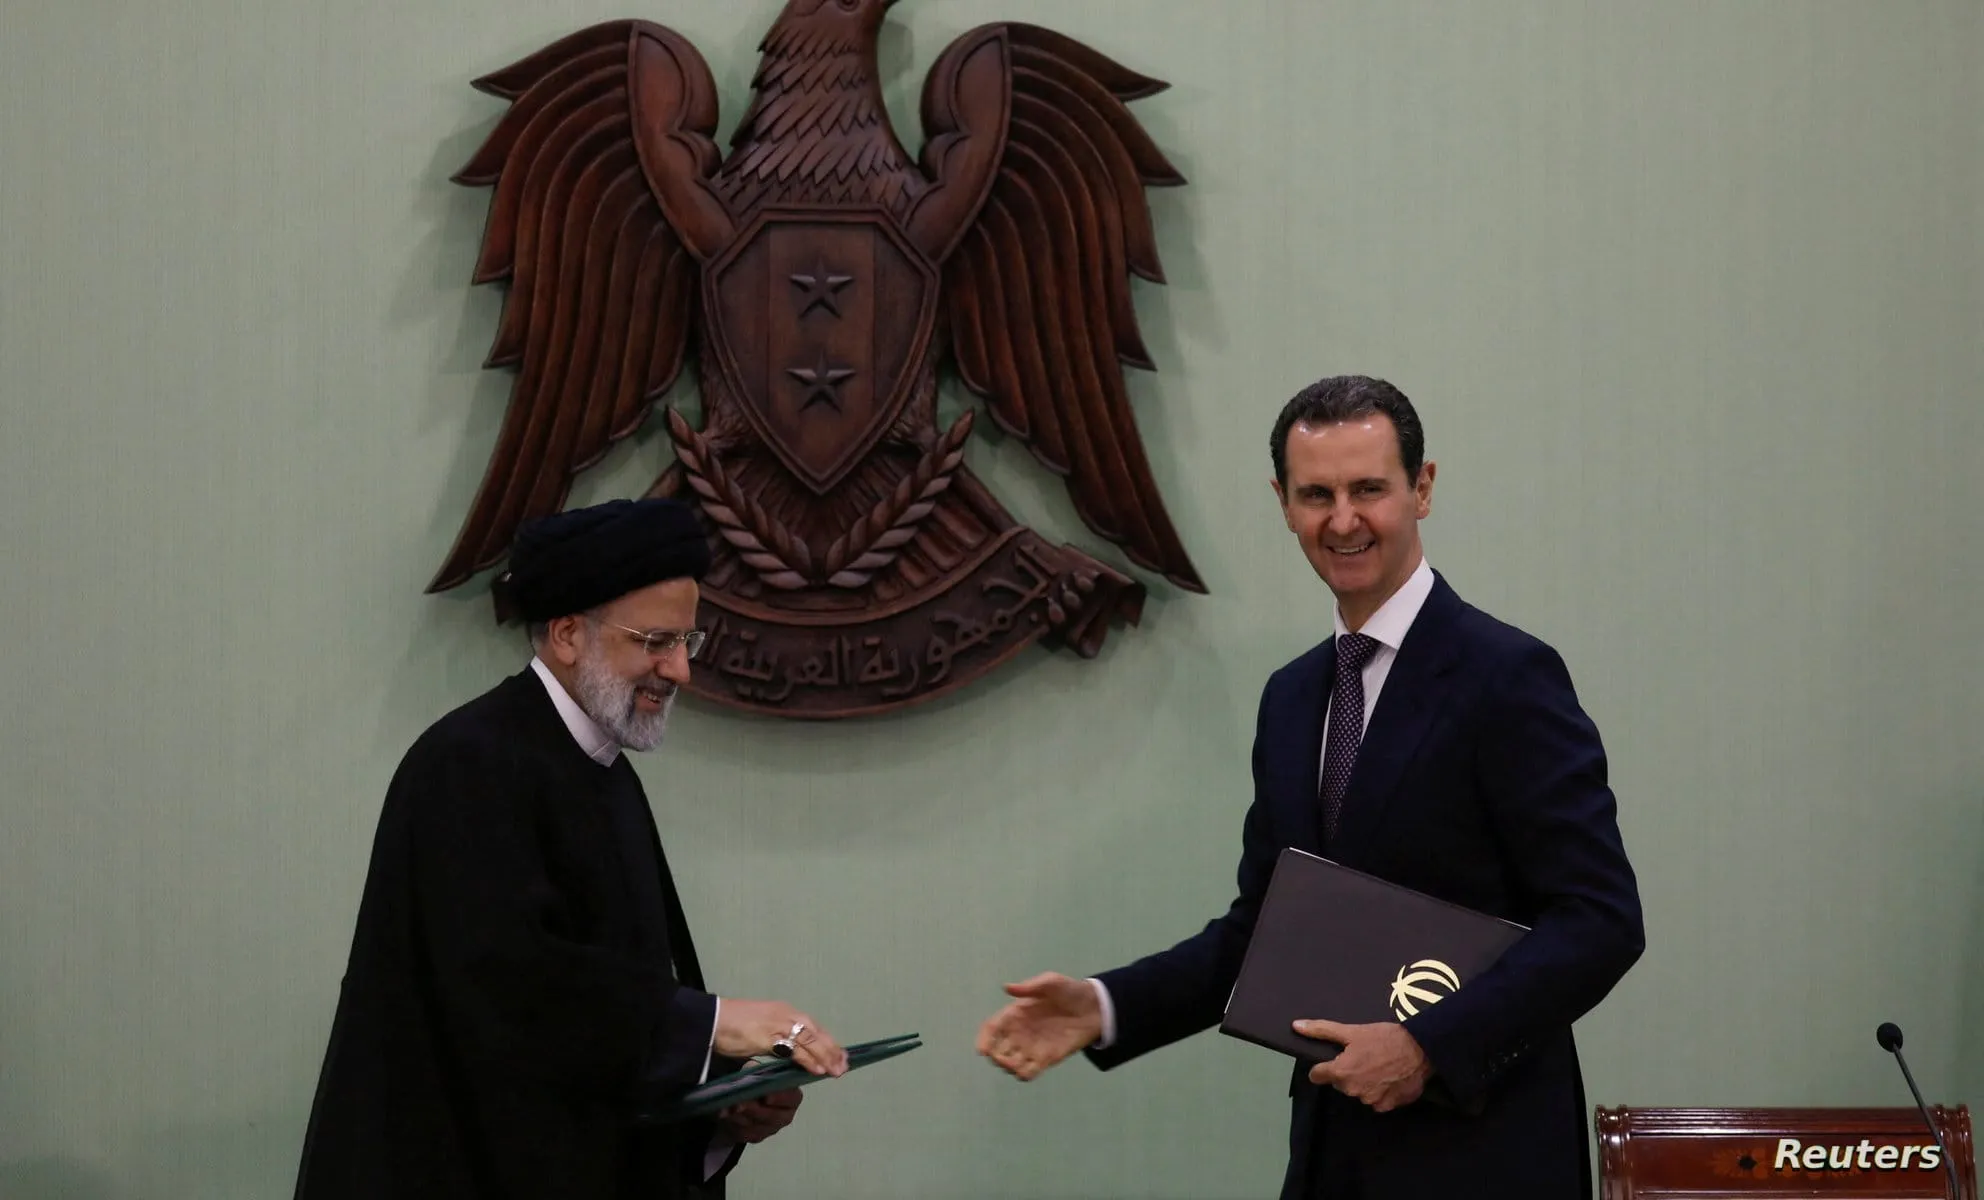 اتفاقية وصفها النظام بـ"خطوة نوعية" .. إيران تتغلغل في قطاع التأمين بسوريا